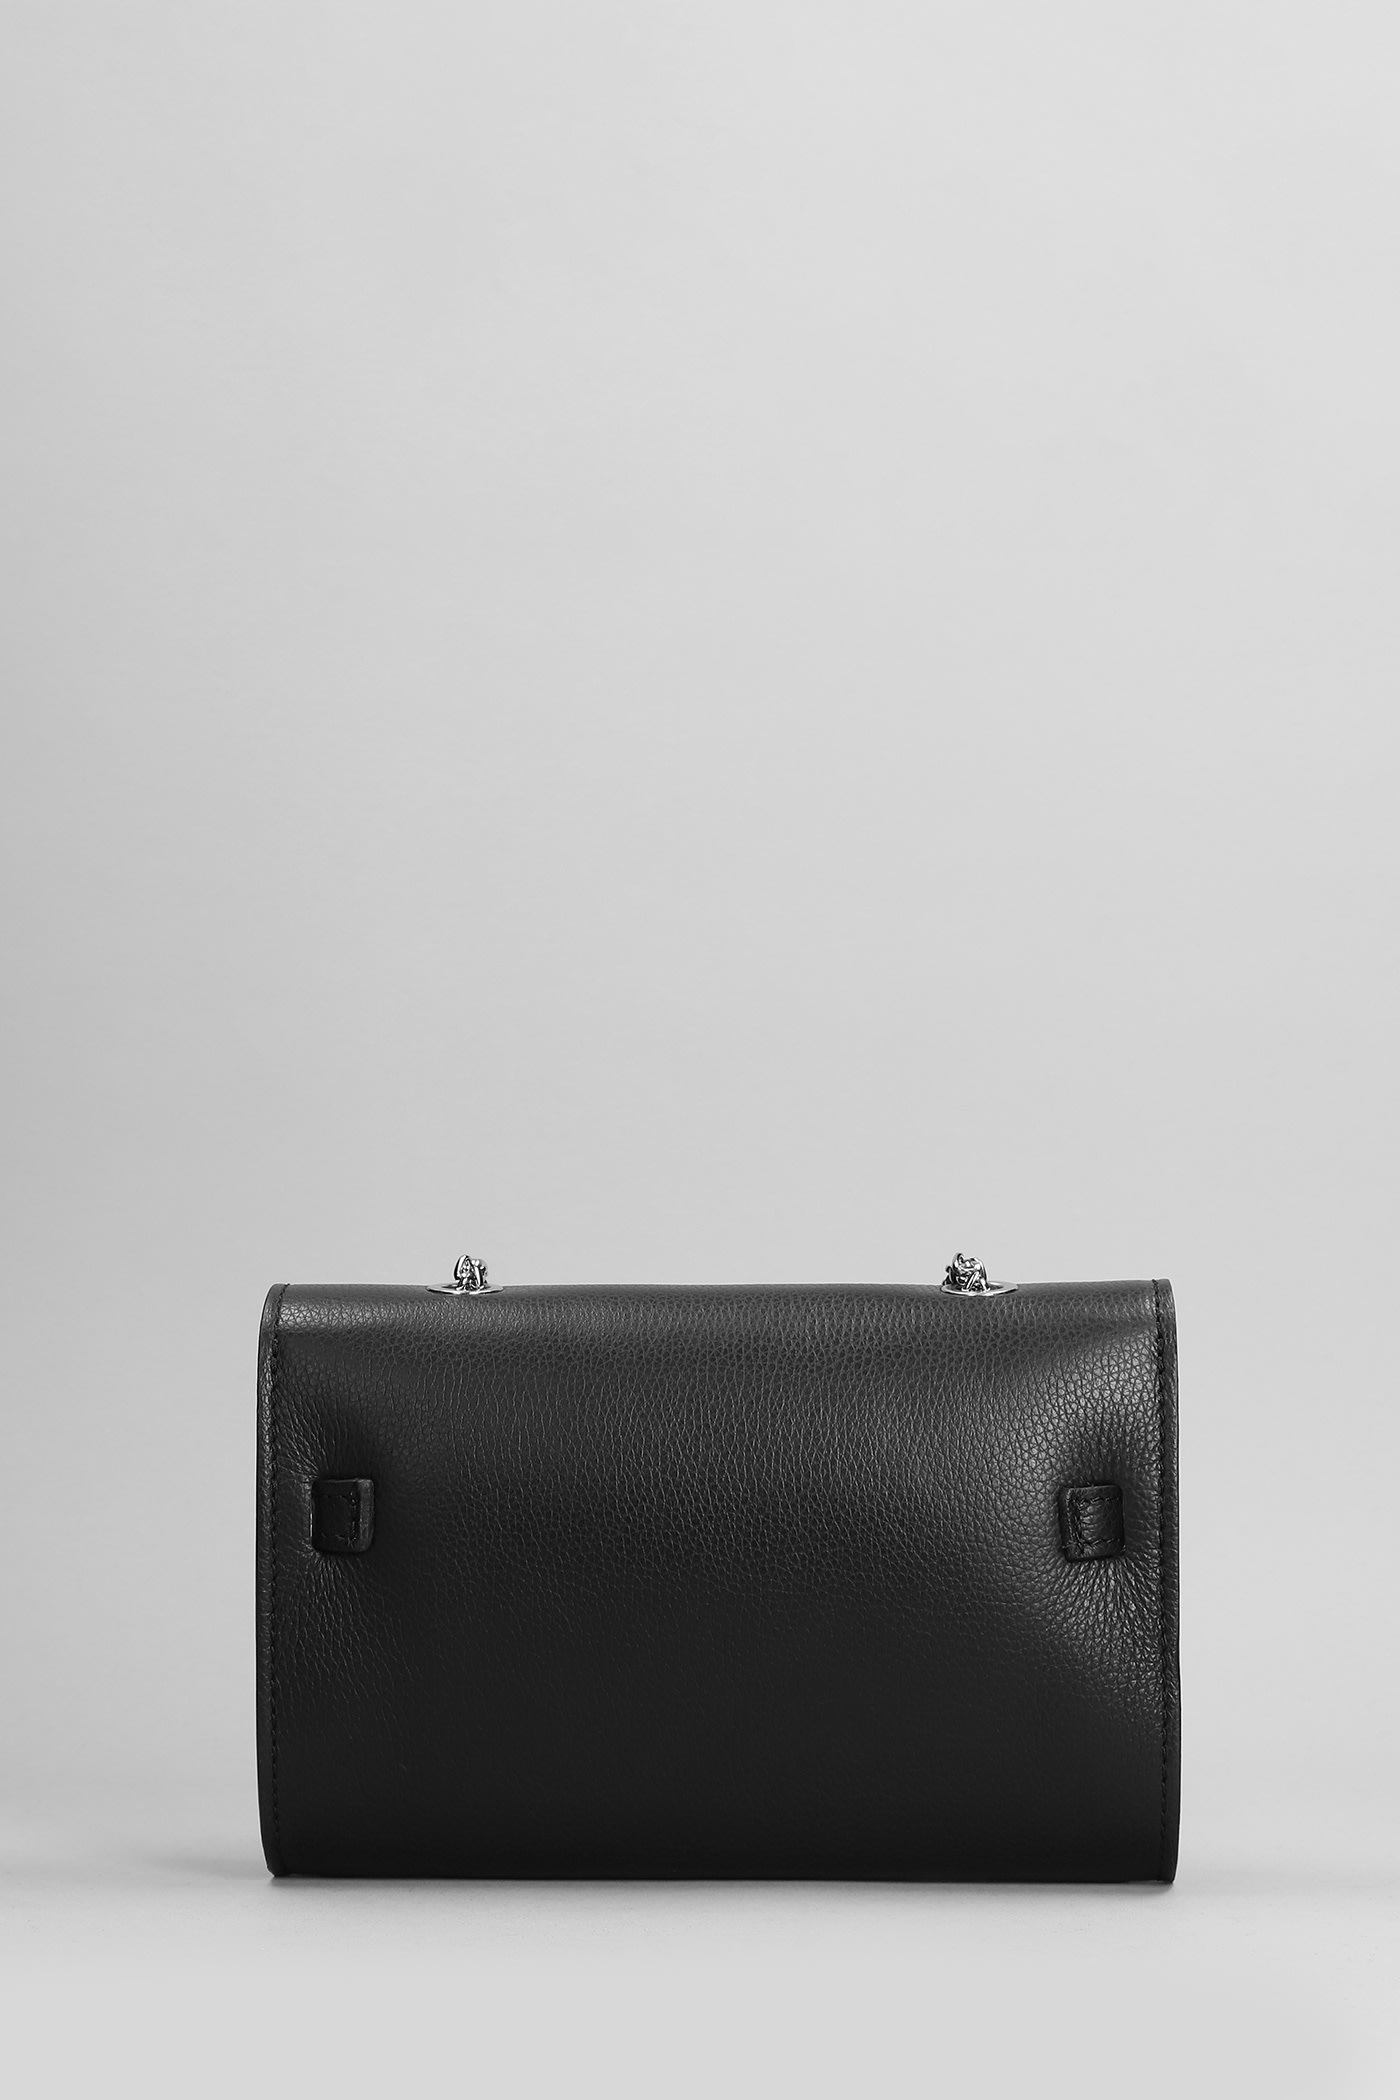 Shop Marc Ellis Rosi Do Shoulder Bag In Black Leather